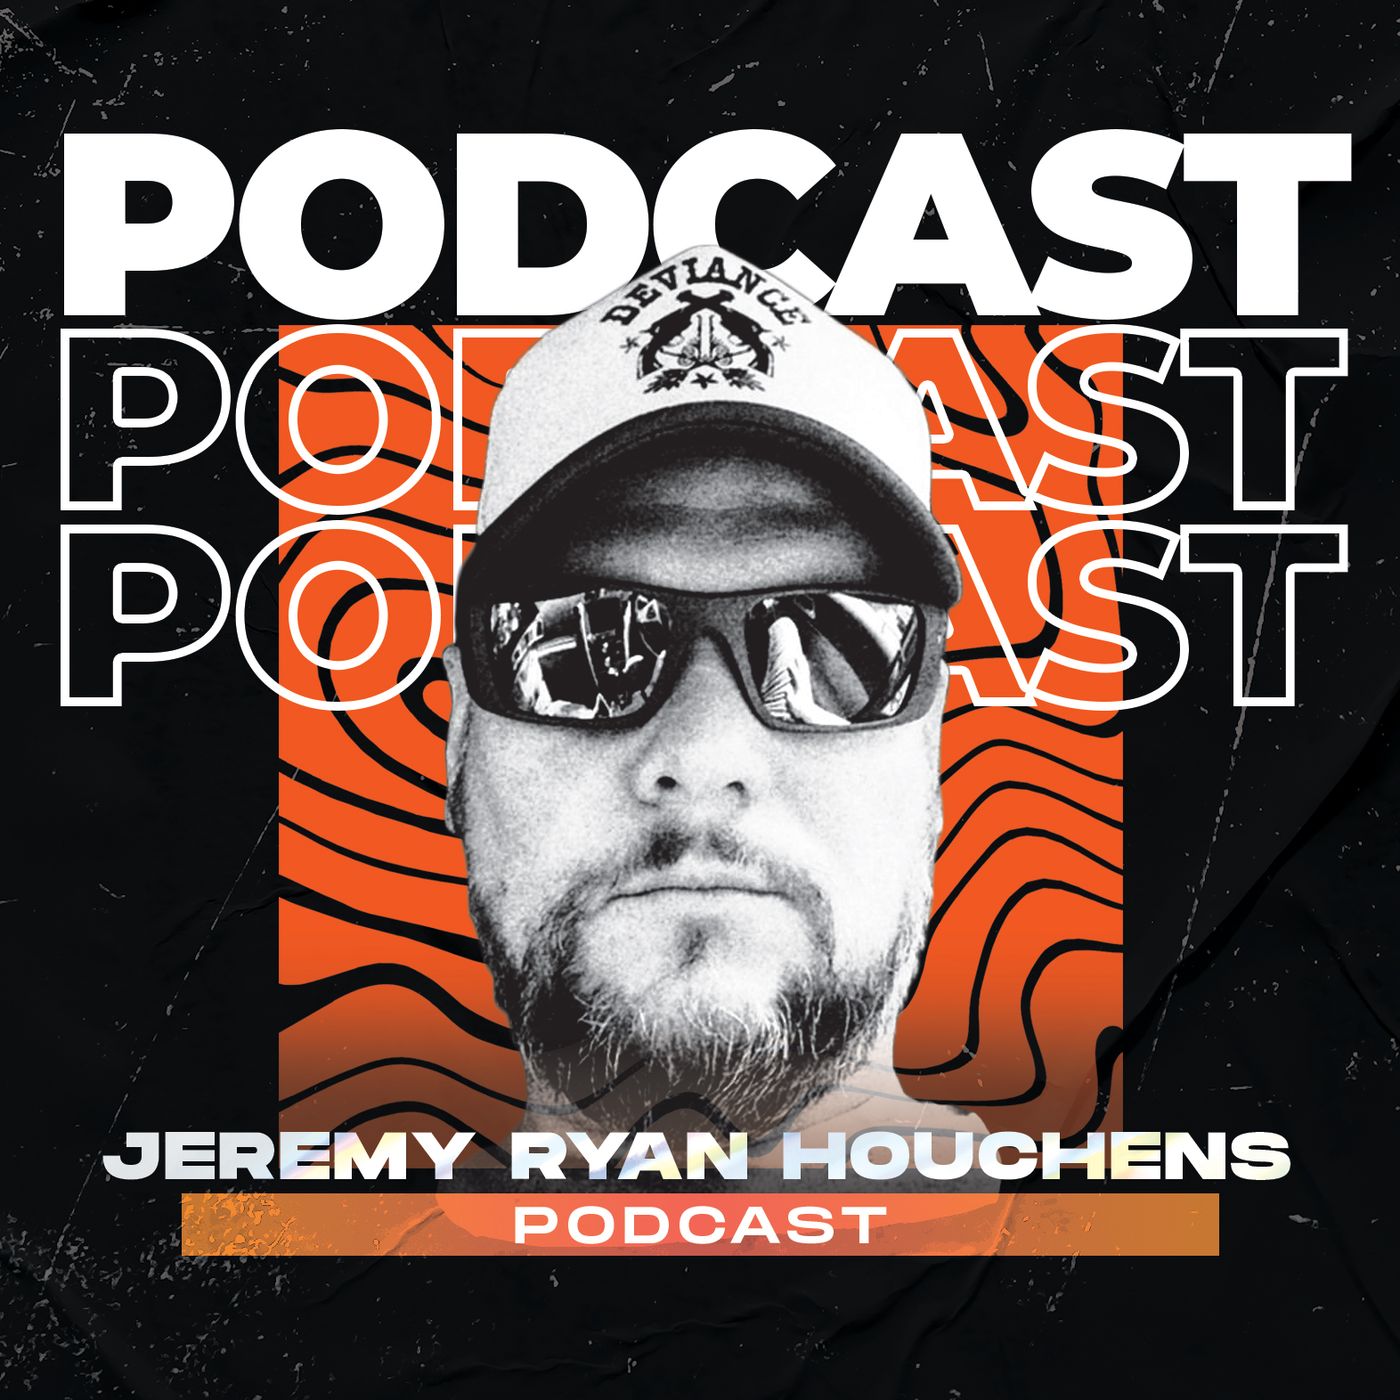 Pornast - Jeremy Ryan Houchens Podcast